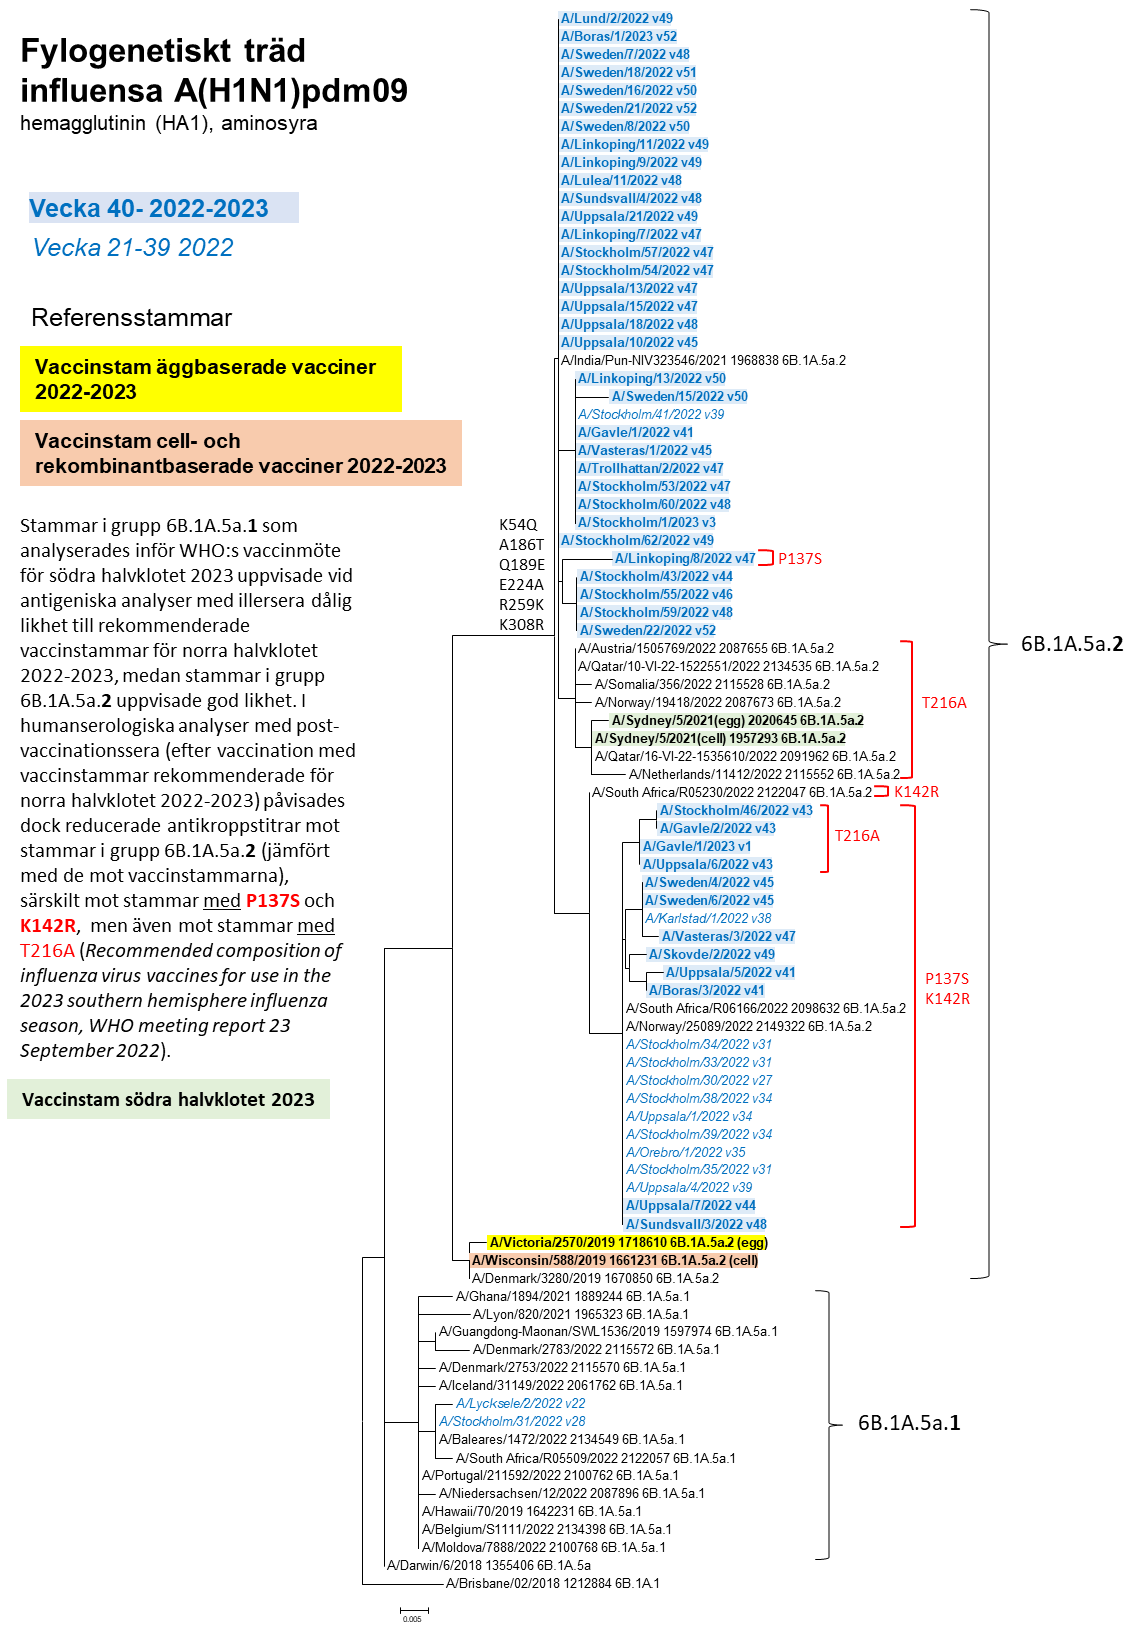 Ett fylogenetiskt träd avseende influensa A H1N1pdm09, läs mer under specialavsnitt karaktärisering, underrubrik genetisk grupp. 